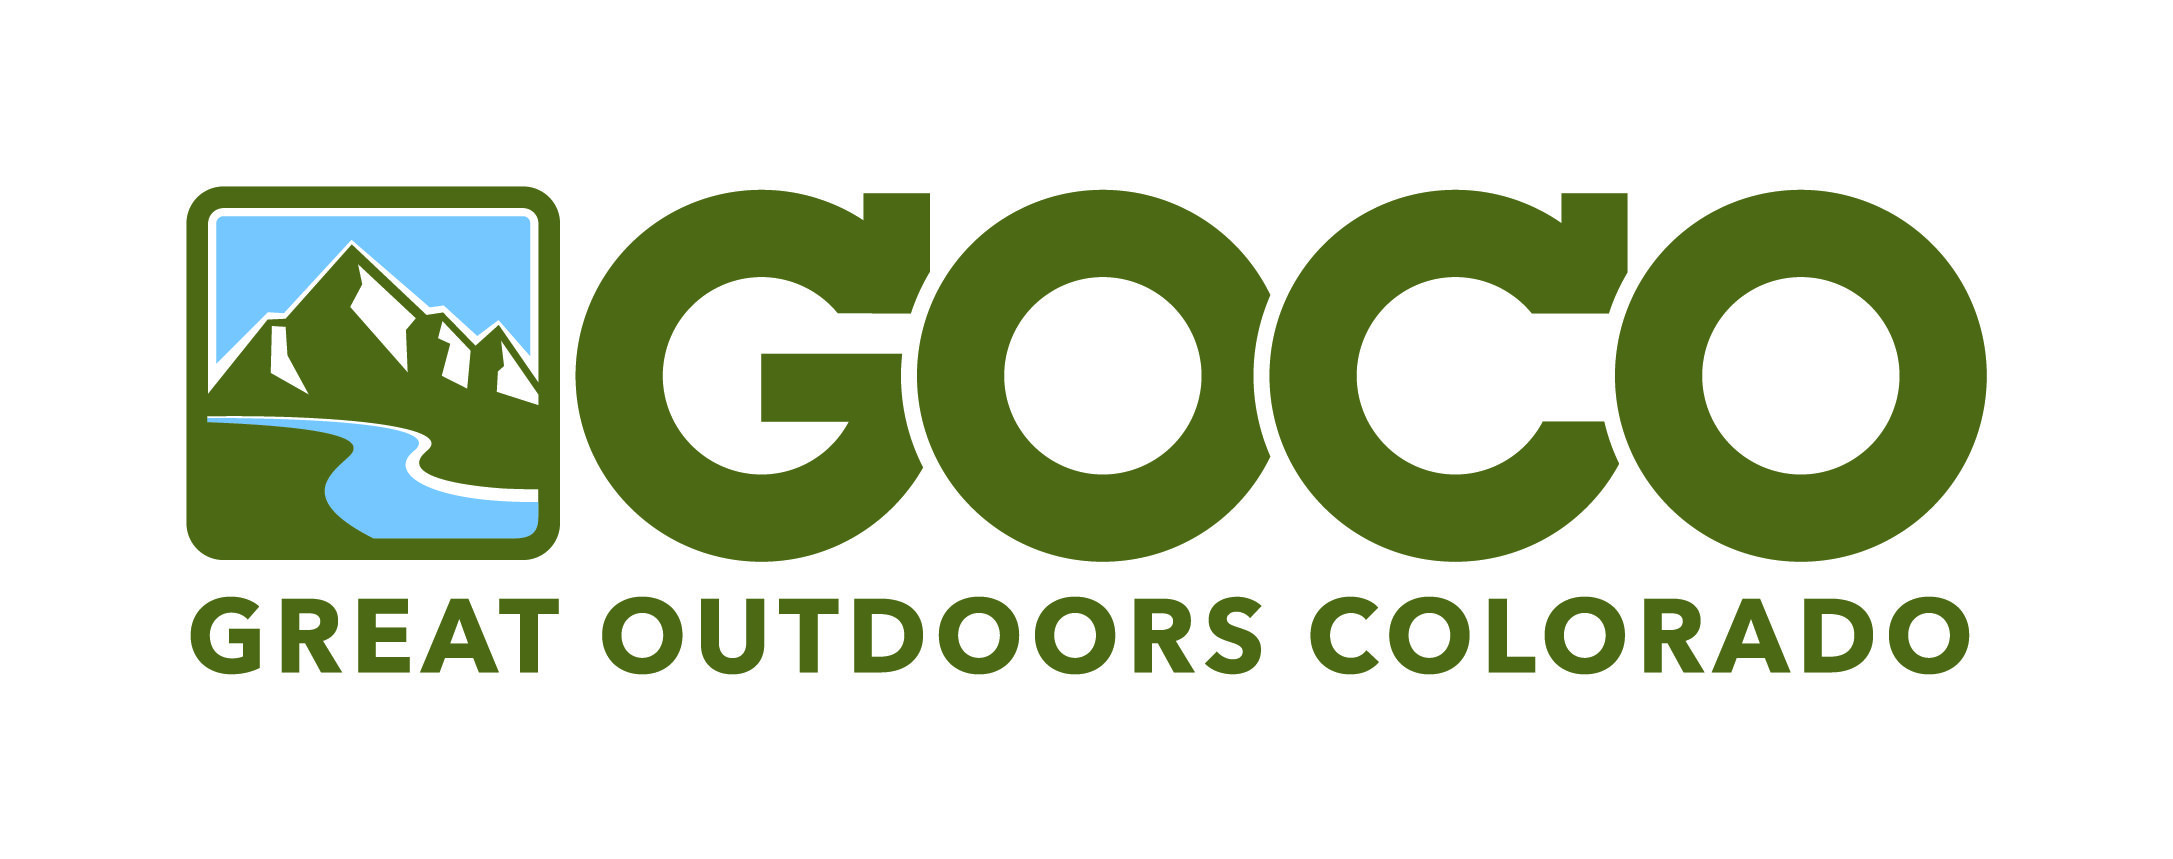  Great Outdoors Colorado GOCO logo 